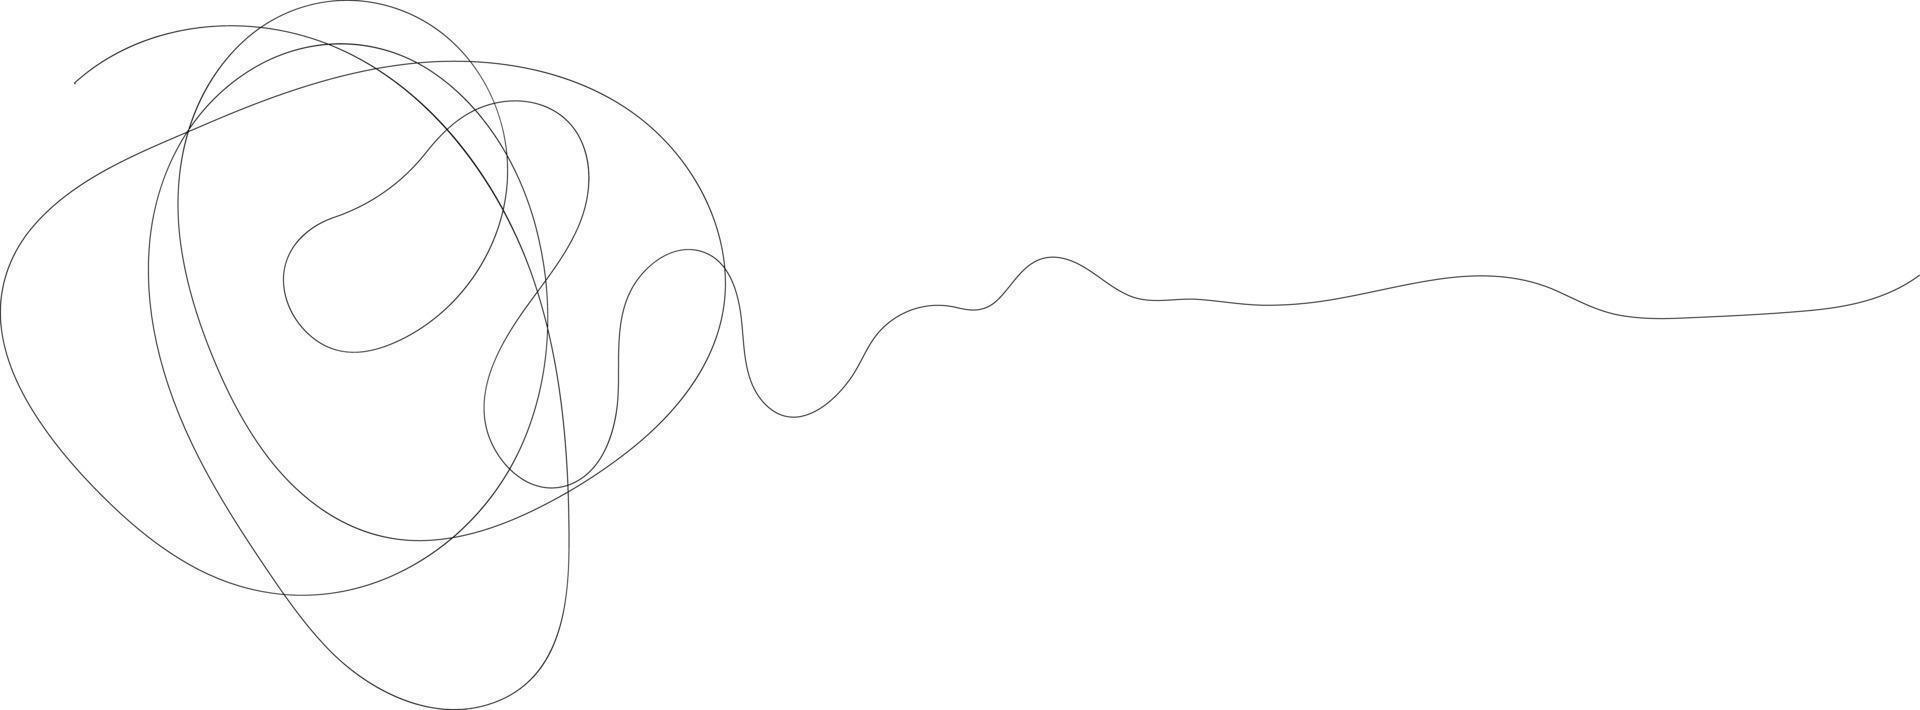 minimalistische schwarze lineare skizze isoliert vektor